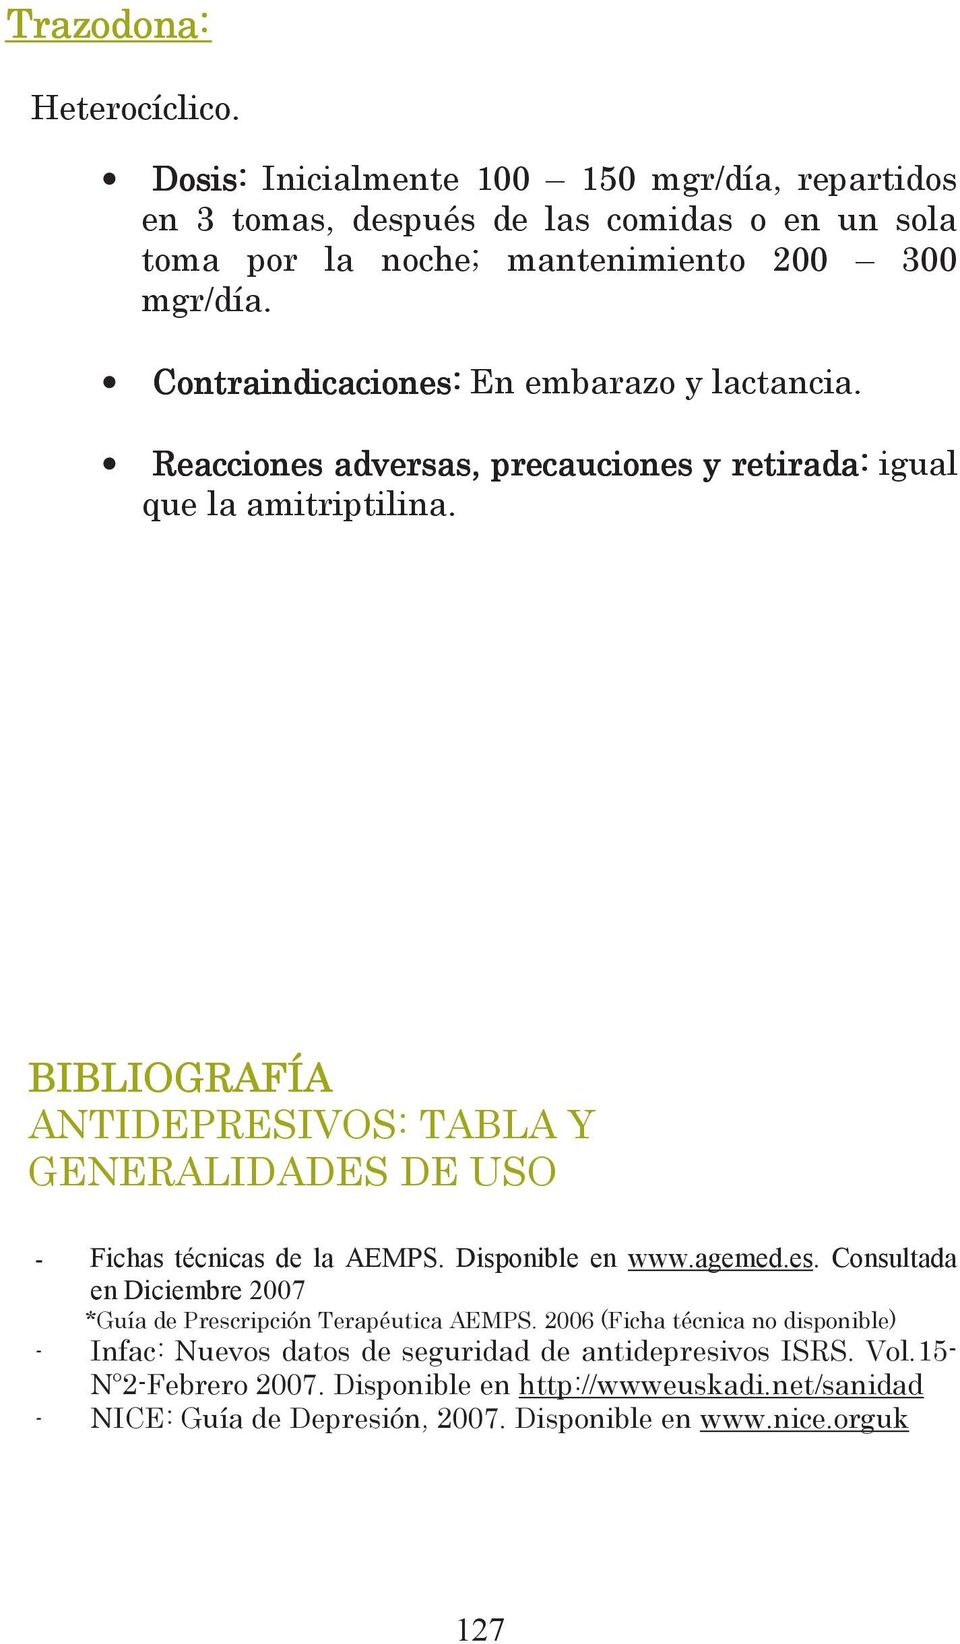 BIBLIOGRAFÍA ANTIDEPRESIVOS: TABLA Y GENERALIDADES DE USO - Fichas técnicas de la AEMPS. Disponible en www.agemed.es.